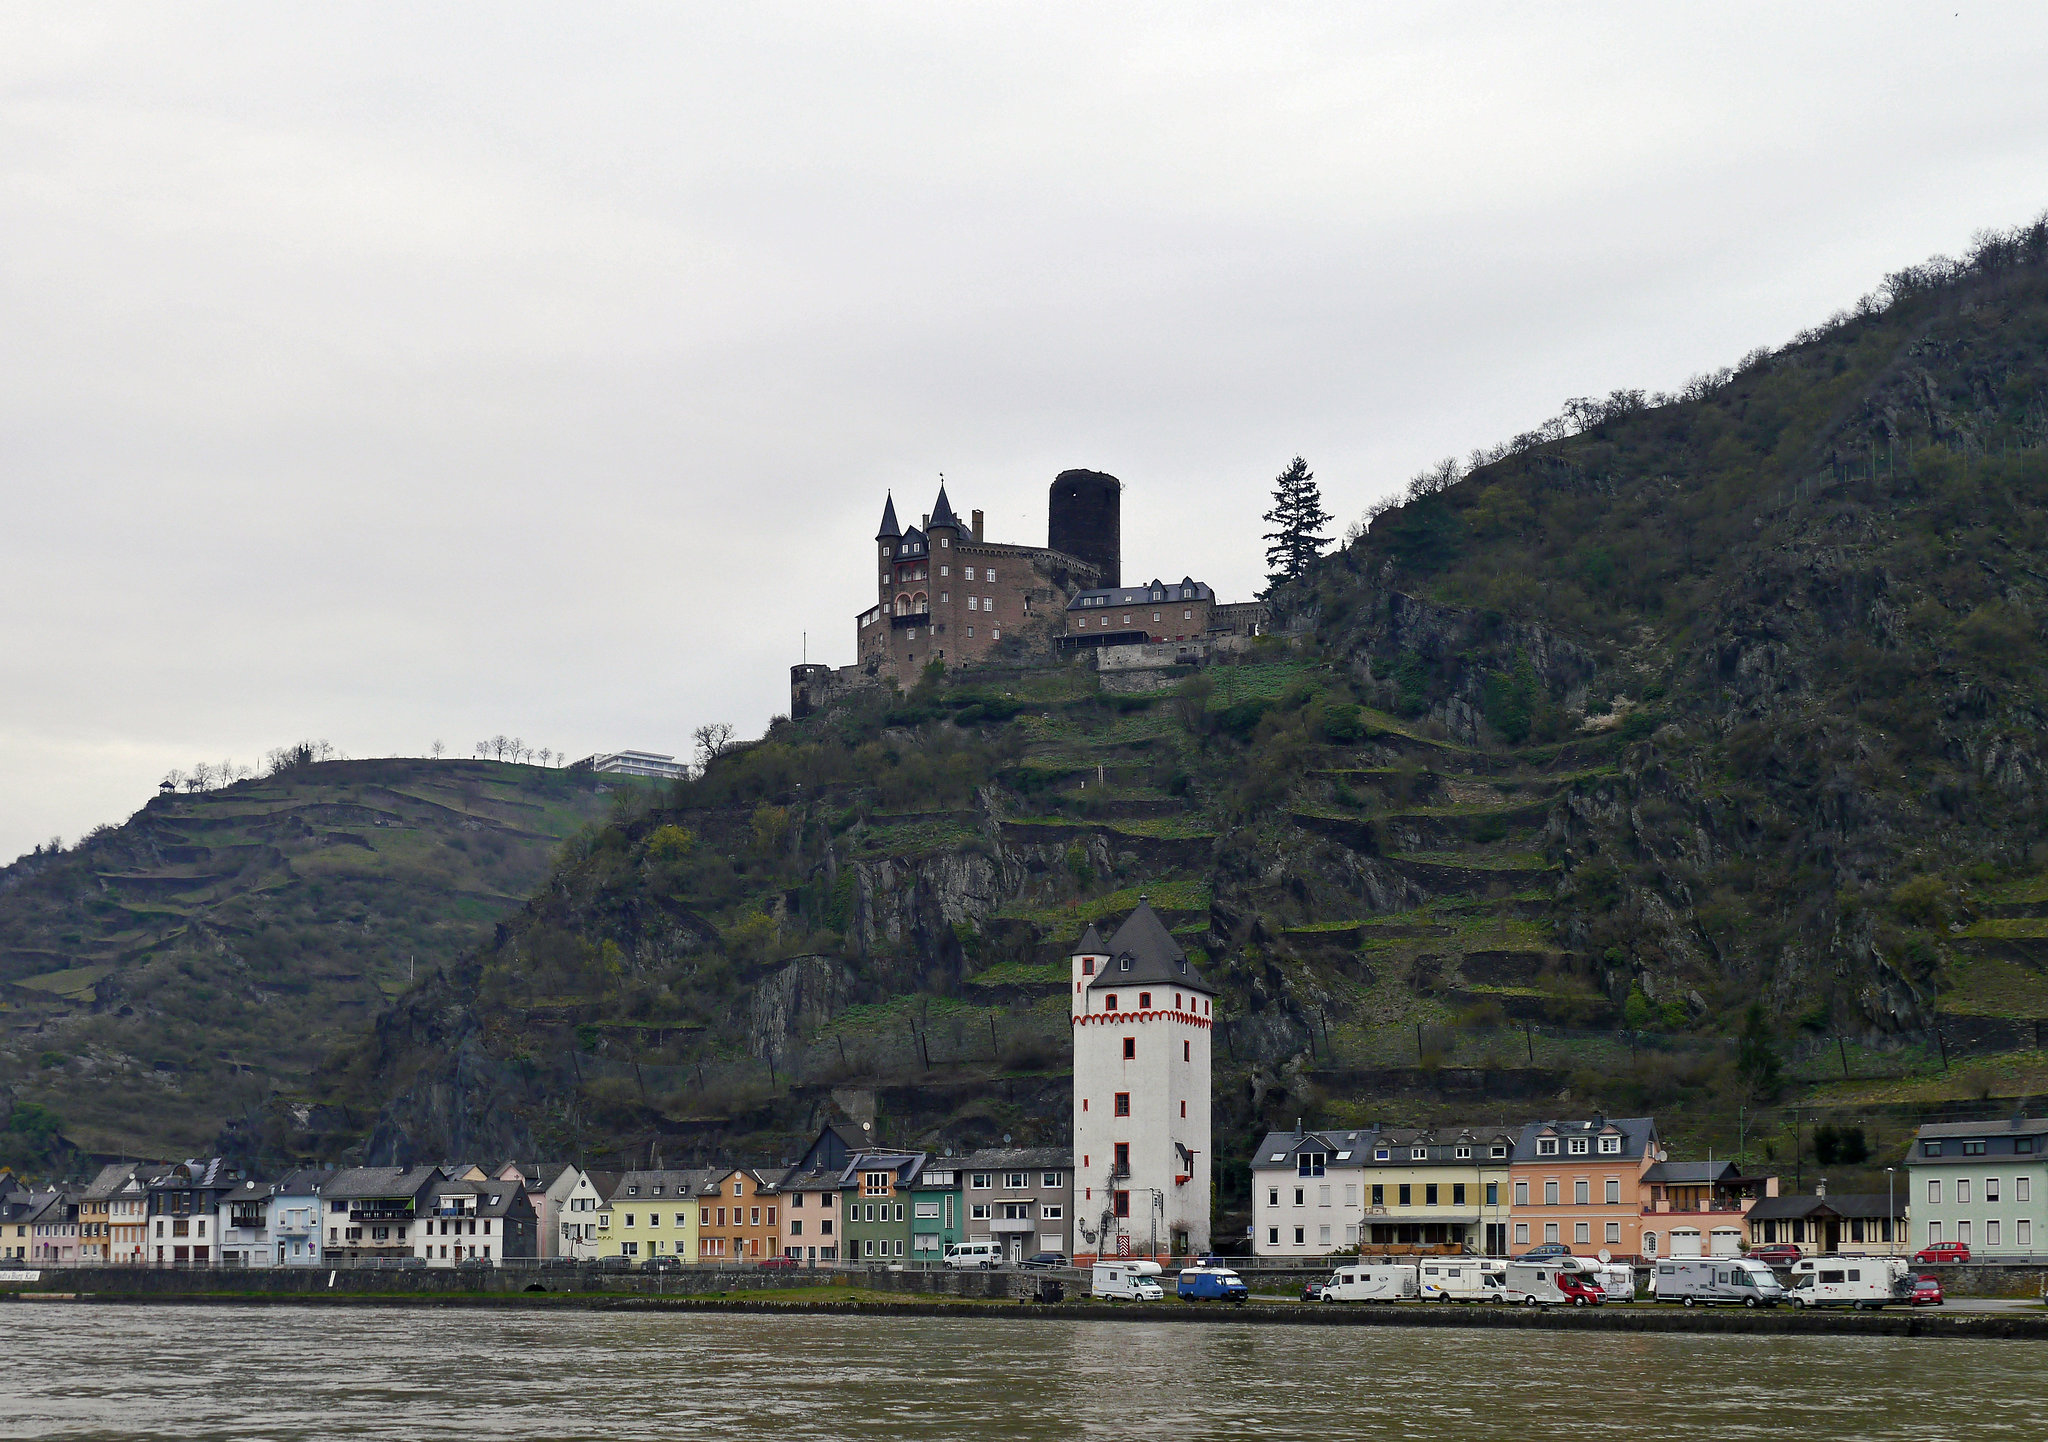 Am Rhein der Mäuse Turm und Oben die Burg Katz